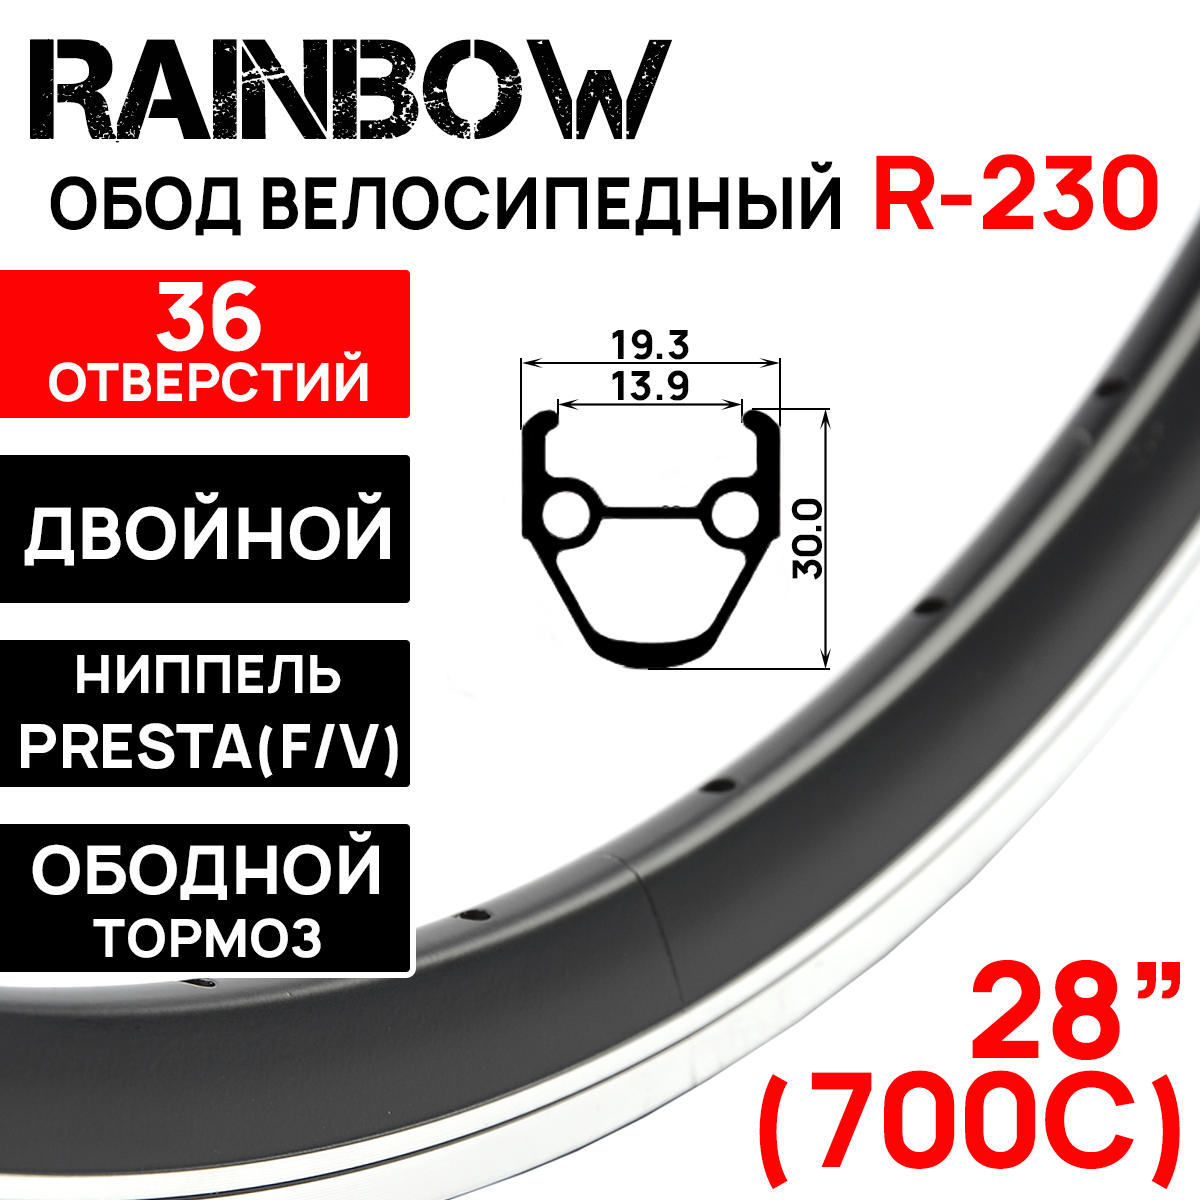 Обод Rainbow R-230, 28" 700С (622х13.9х31) двойной, под ободной тормоз, 36 отв, фрезерованный, индикатор износа, нипель F/V, цвет черный.